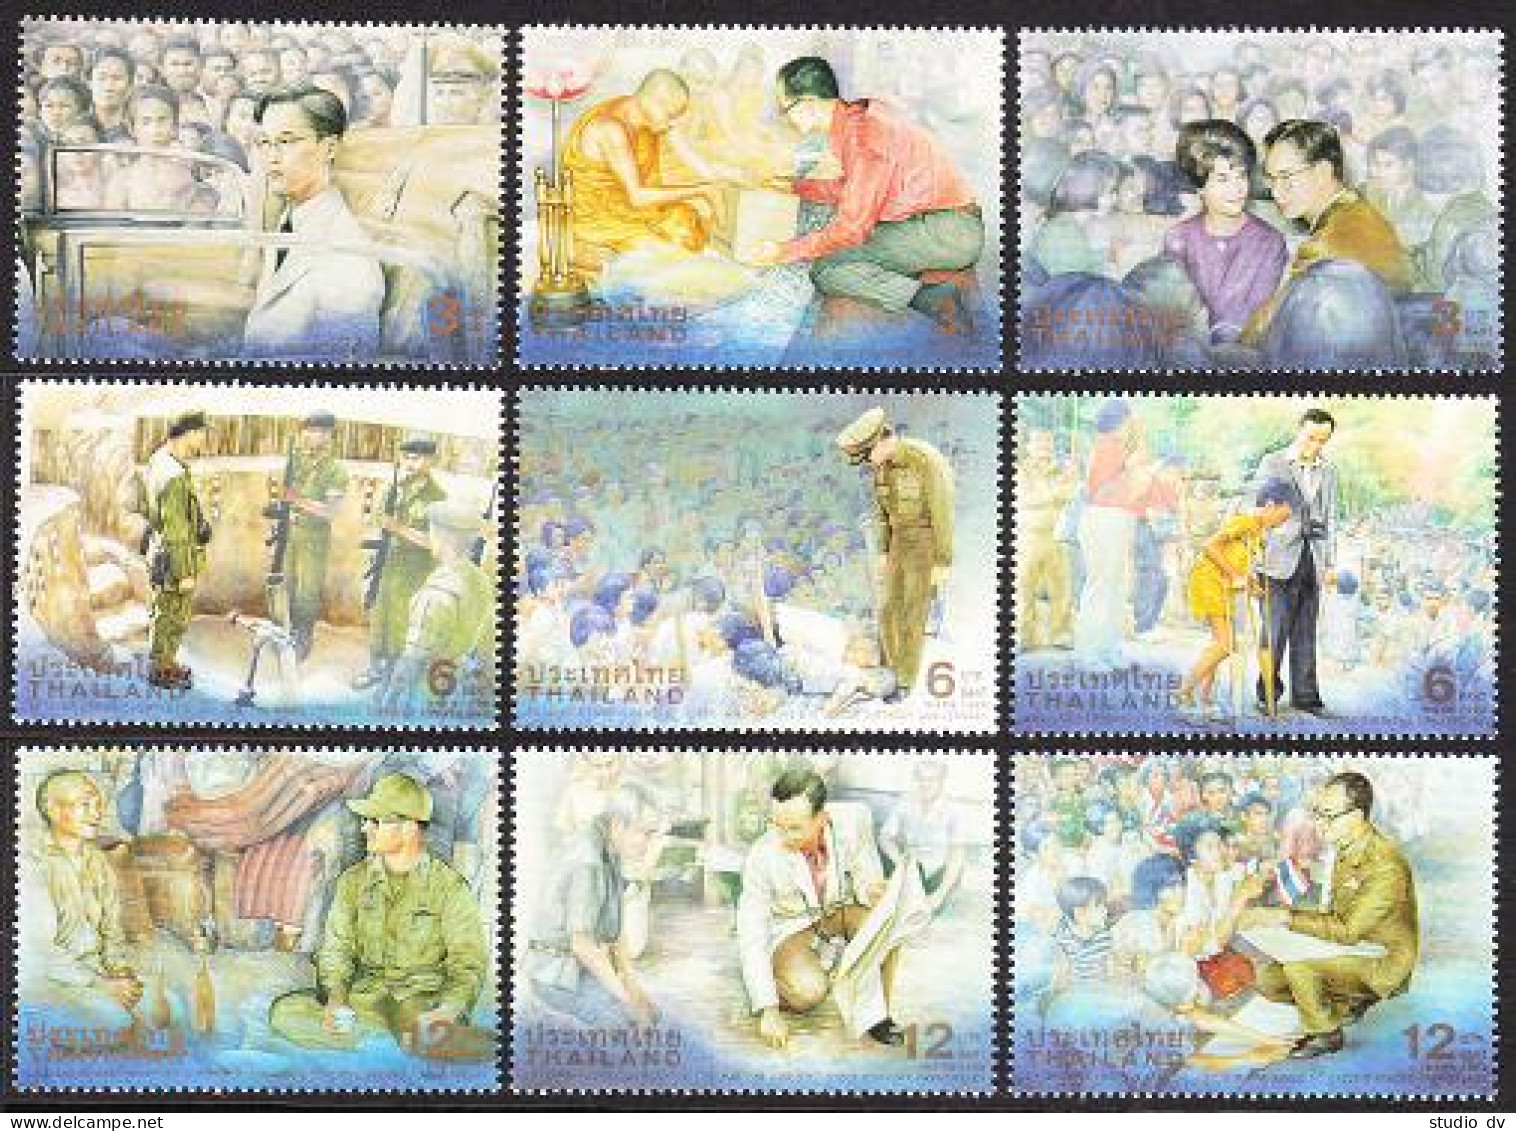 Thailand 1906-1914,1914a,MNH. King Bhumibol Adulyadej-72th Birthday,1999. - Thailand